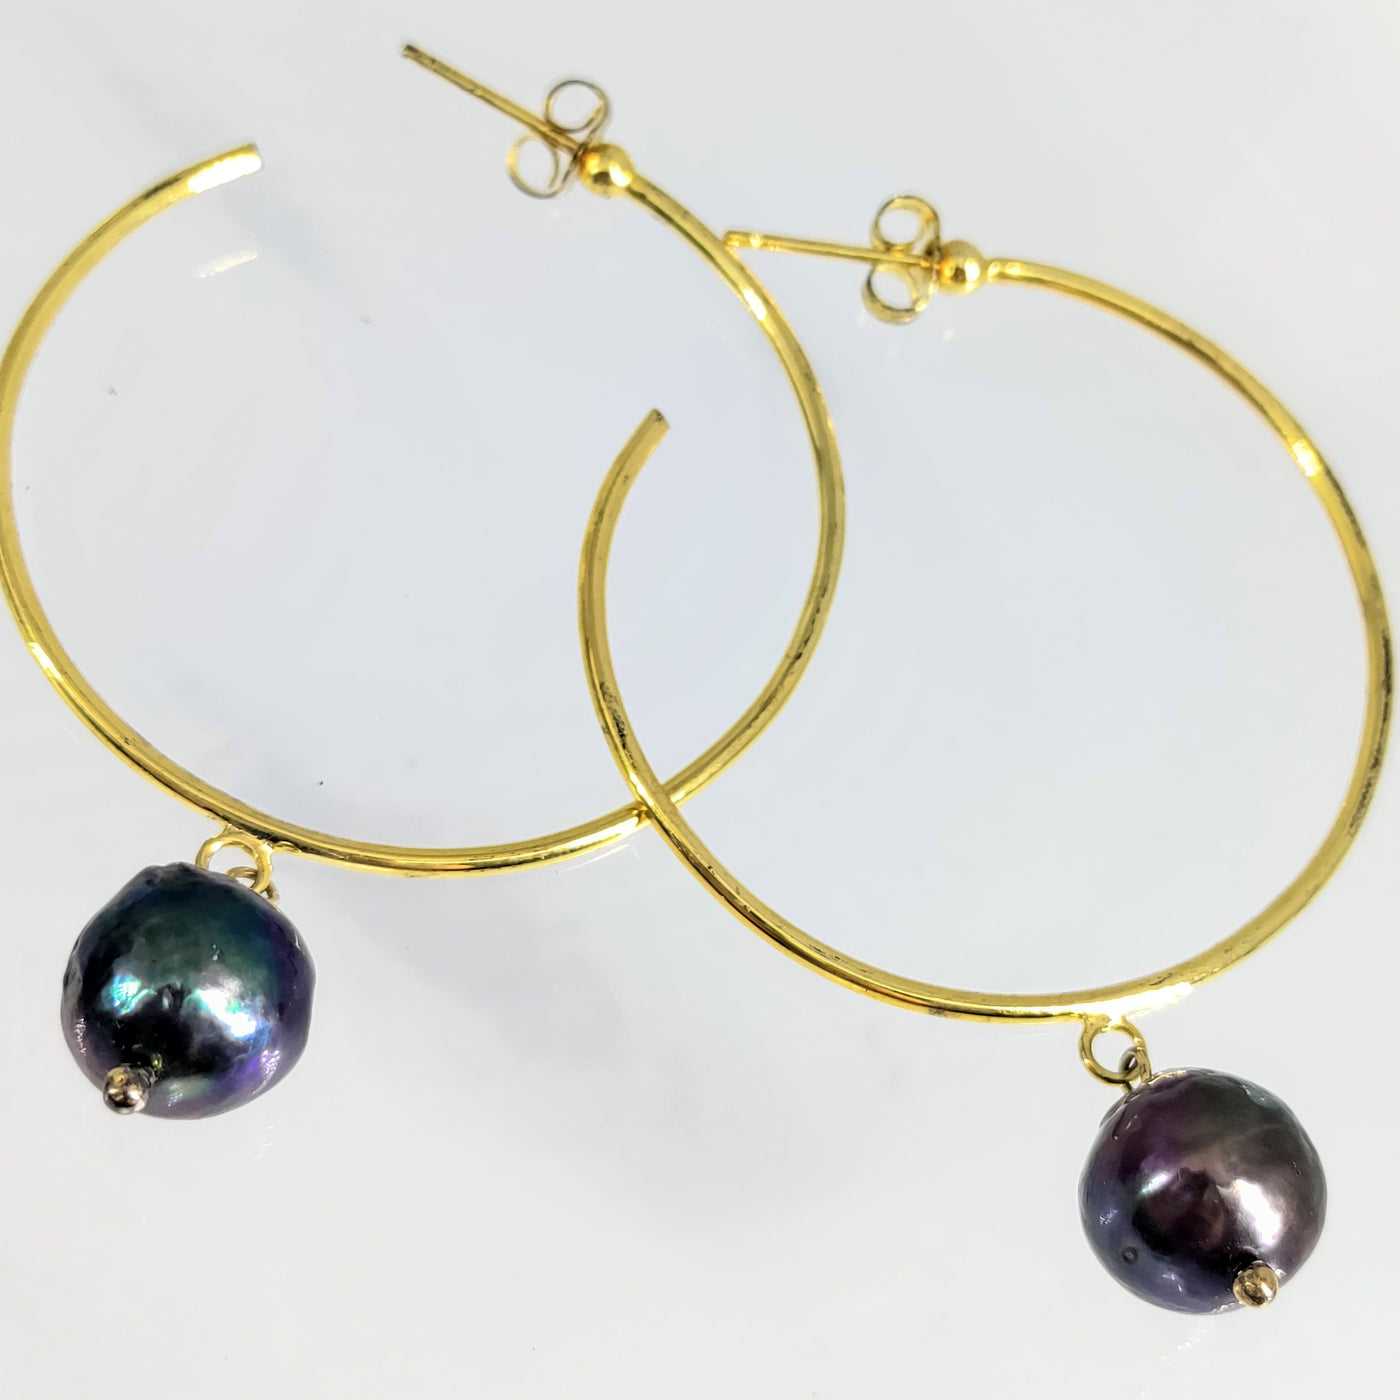 "Pearl Hoopin'" 2.25" Earrings - Peacock Pearls, Gold Sterling